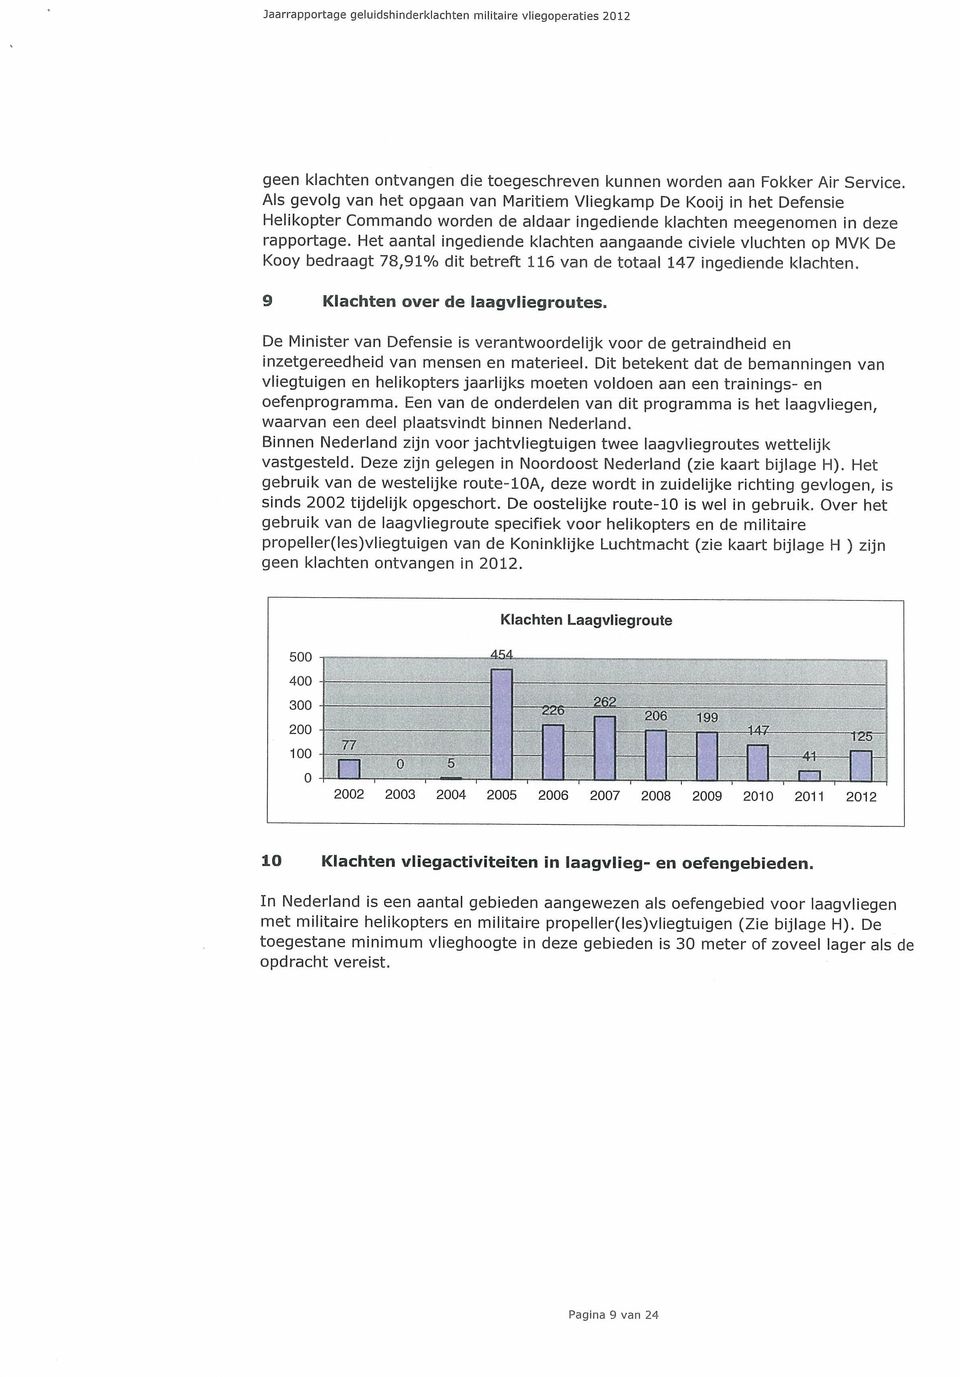 Het aantal ingediende klachten aangaande civiele vluchten op MVK De Kooy bedraagt 78,91% dit betreft 116 van cie totaal 147 ingediende klachten. 9 Klachten over de laagvliegroutes.